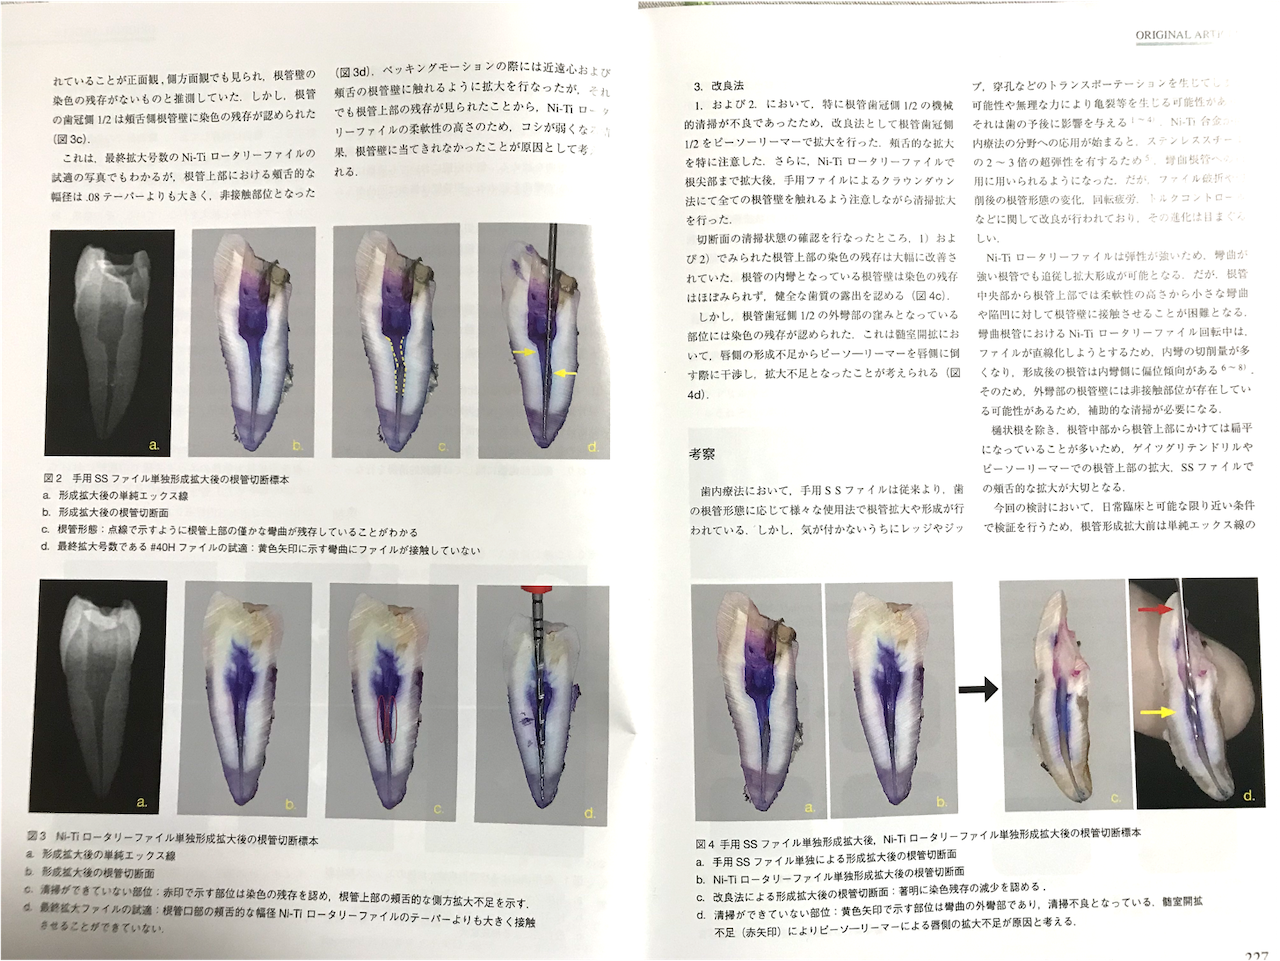 日本顎咬合学会で歯内療法に関する論文が掲載されました♪3